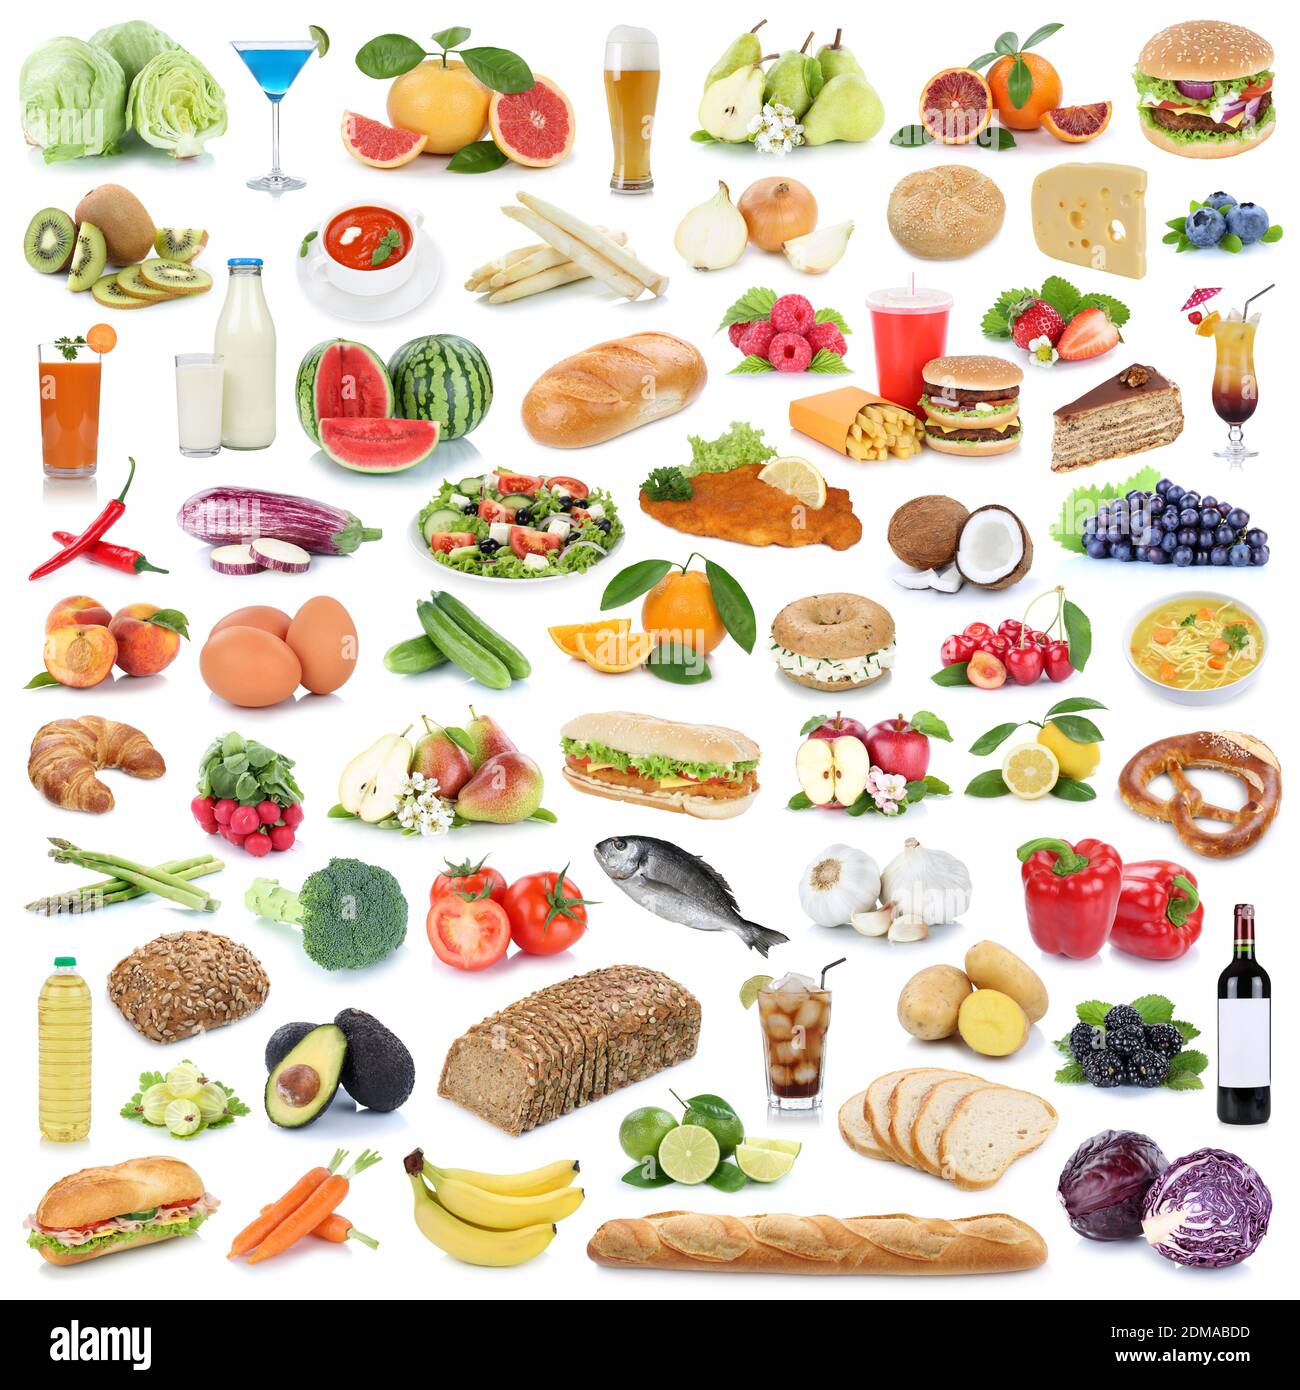 Sammlung Essen gesunde Ernährung Obst und Gemüse Früchte Lebensmittel Freisteller freigestellt isoliert Foto Stock